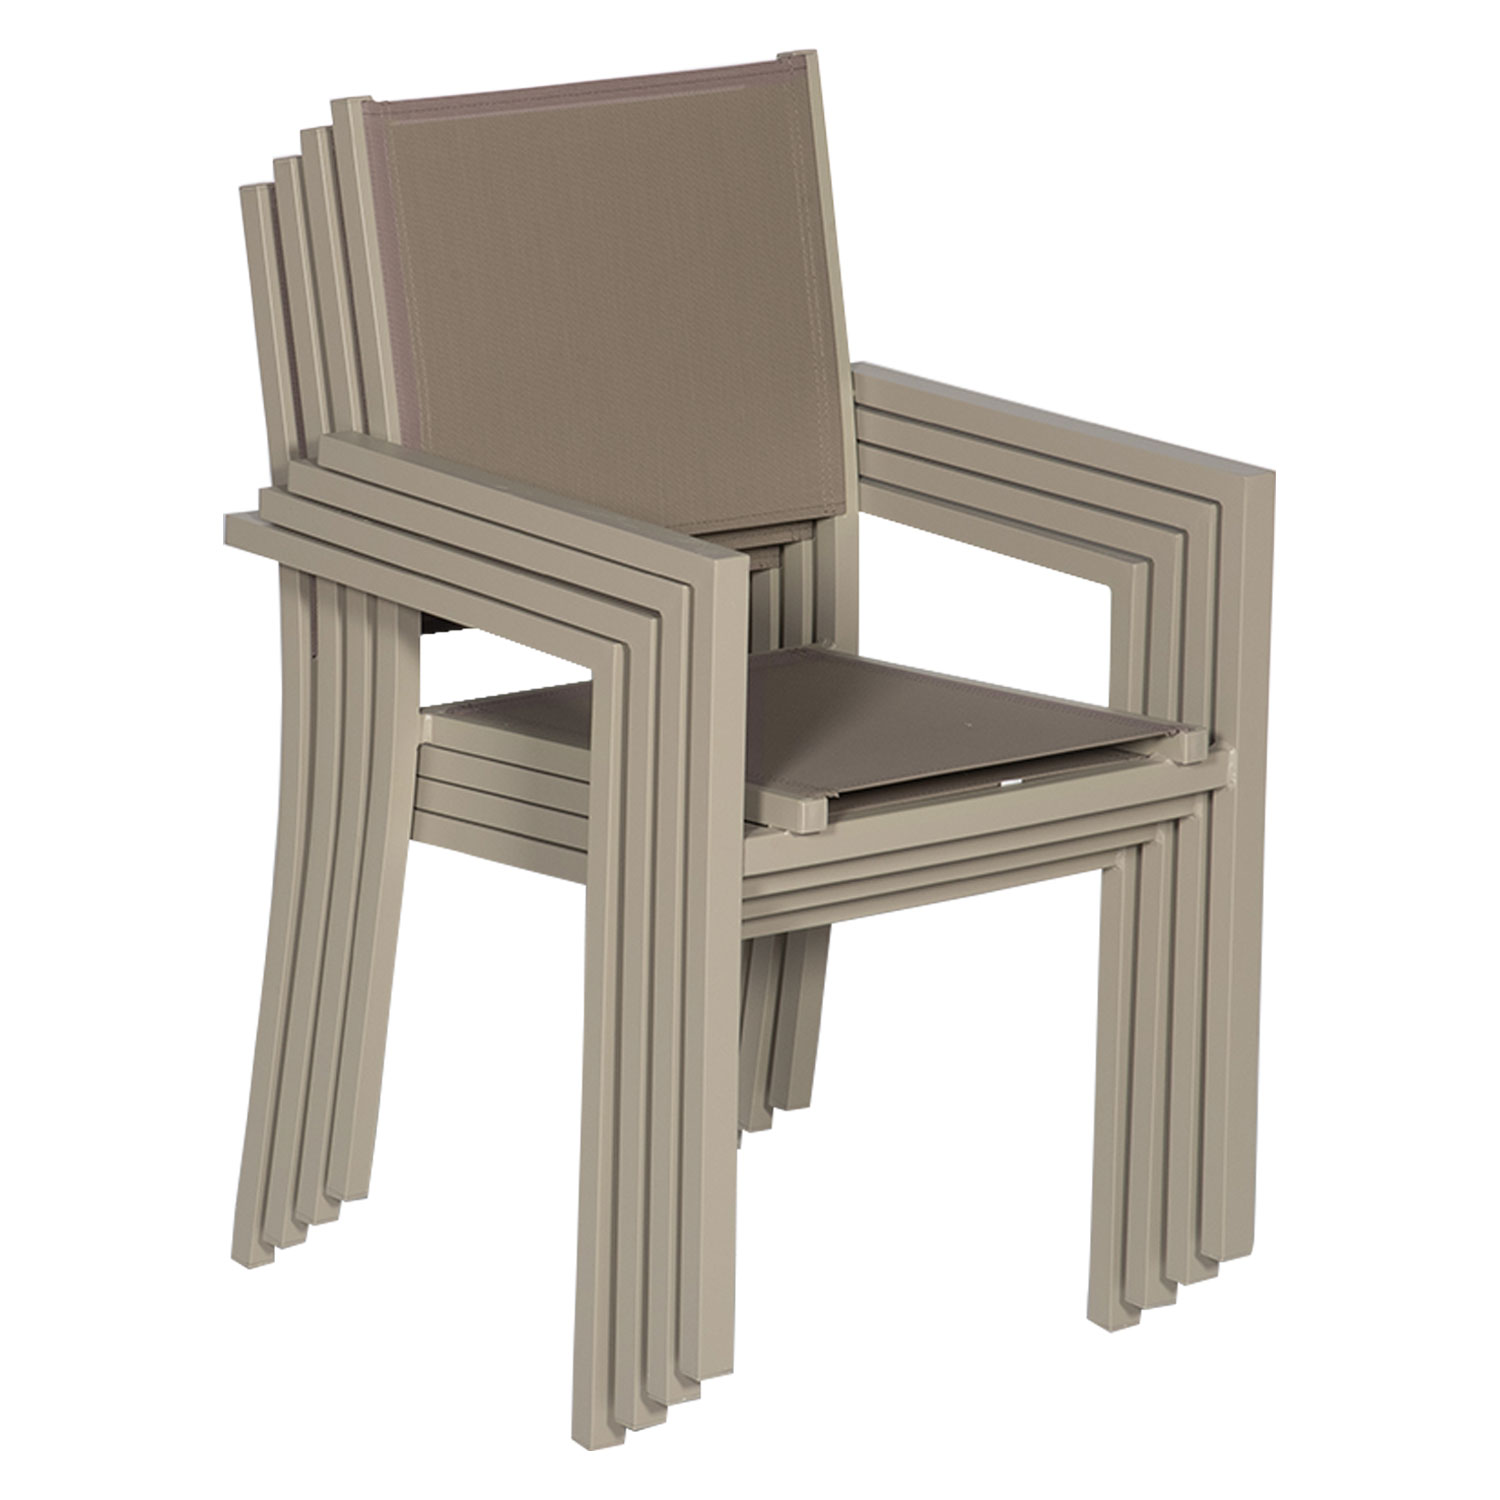 Juego de 8 sillas de aluminio color topo - textileno topo